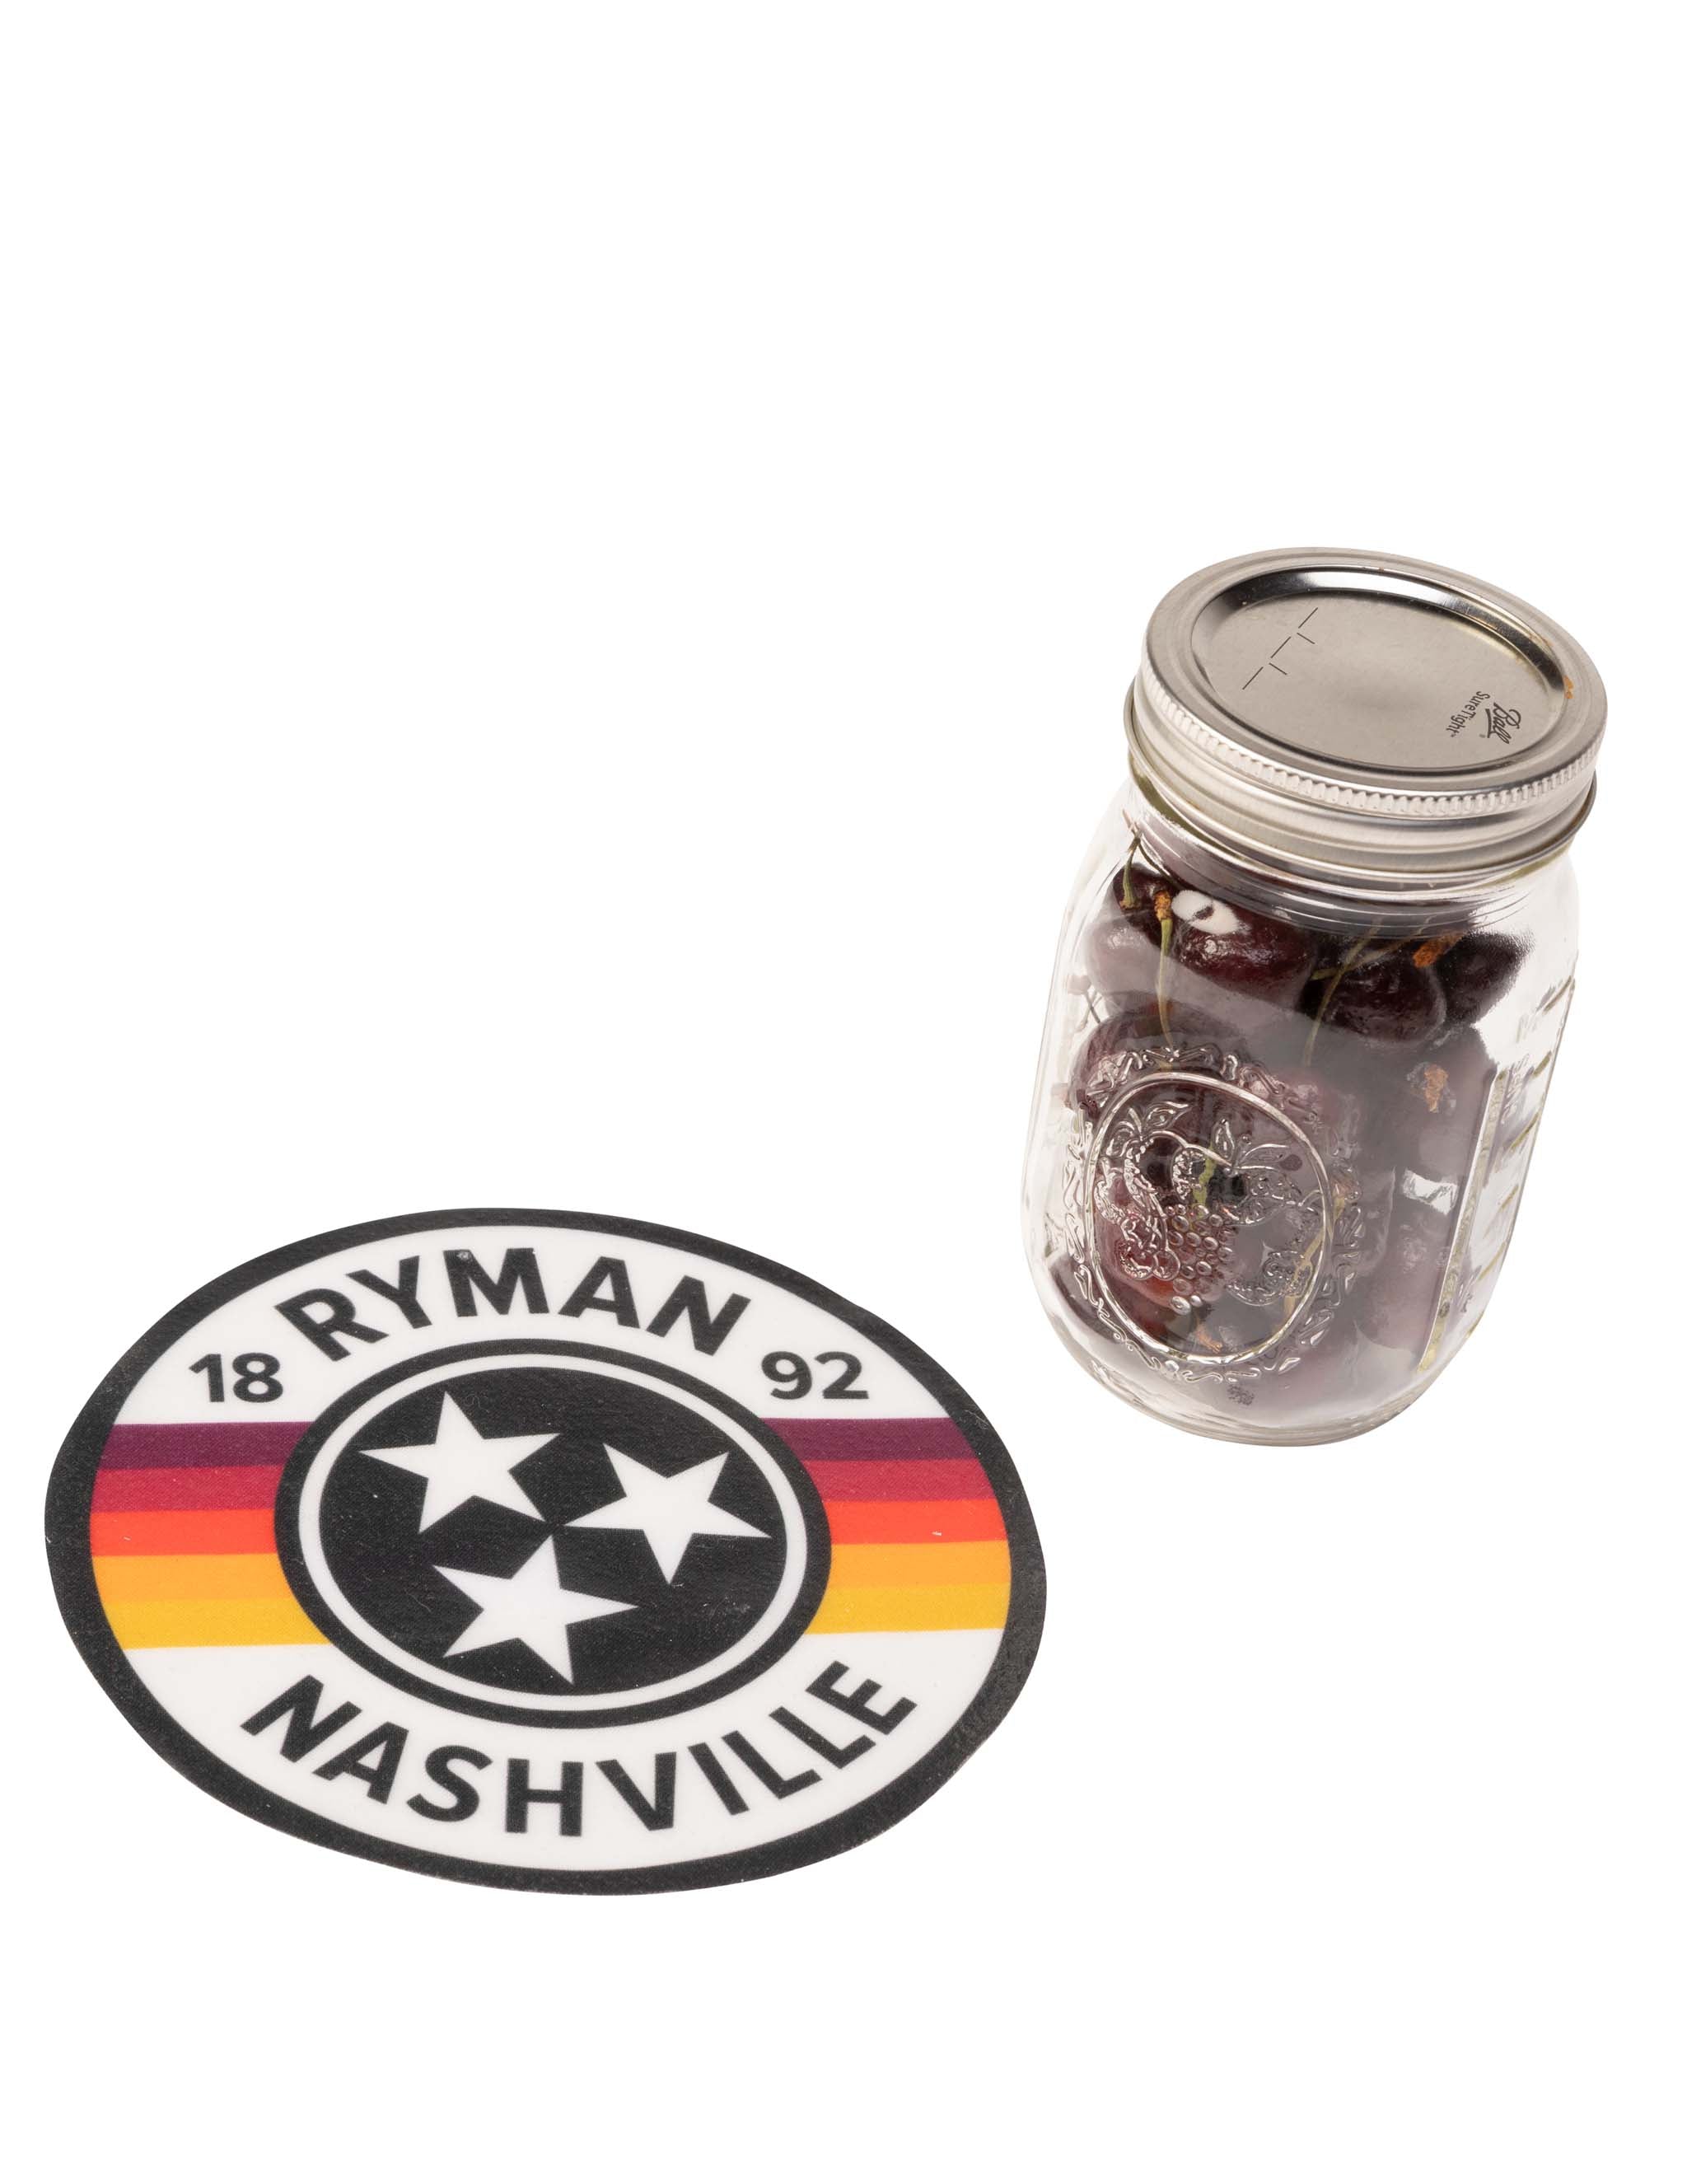 Ryman Tri-Star Silicone Jar Opener